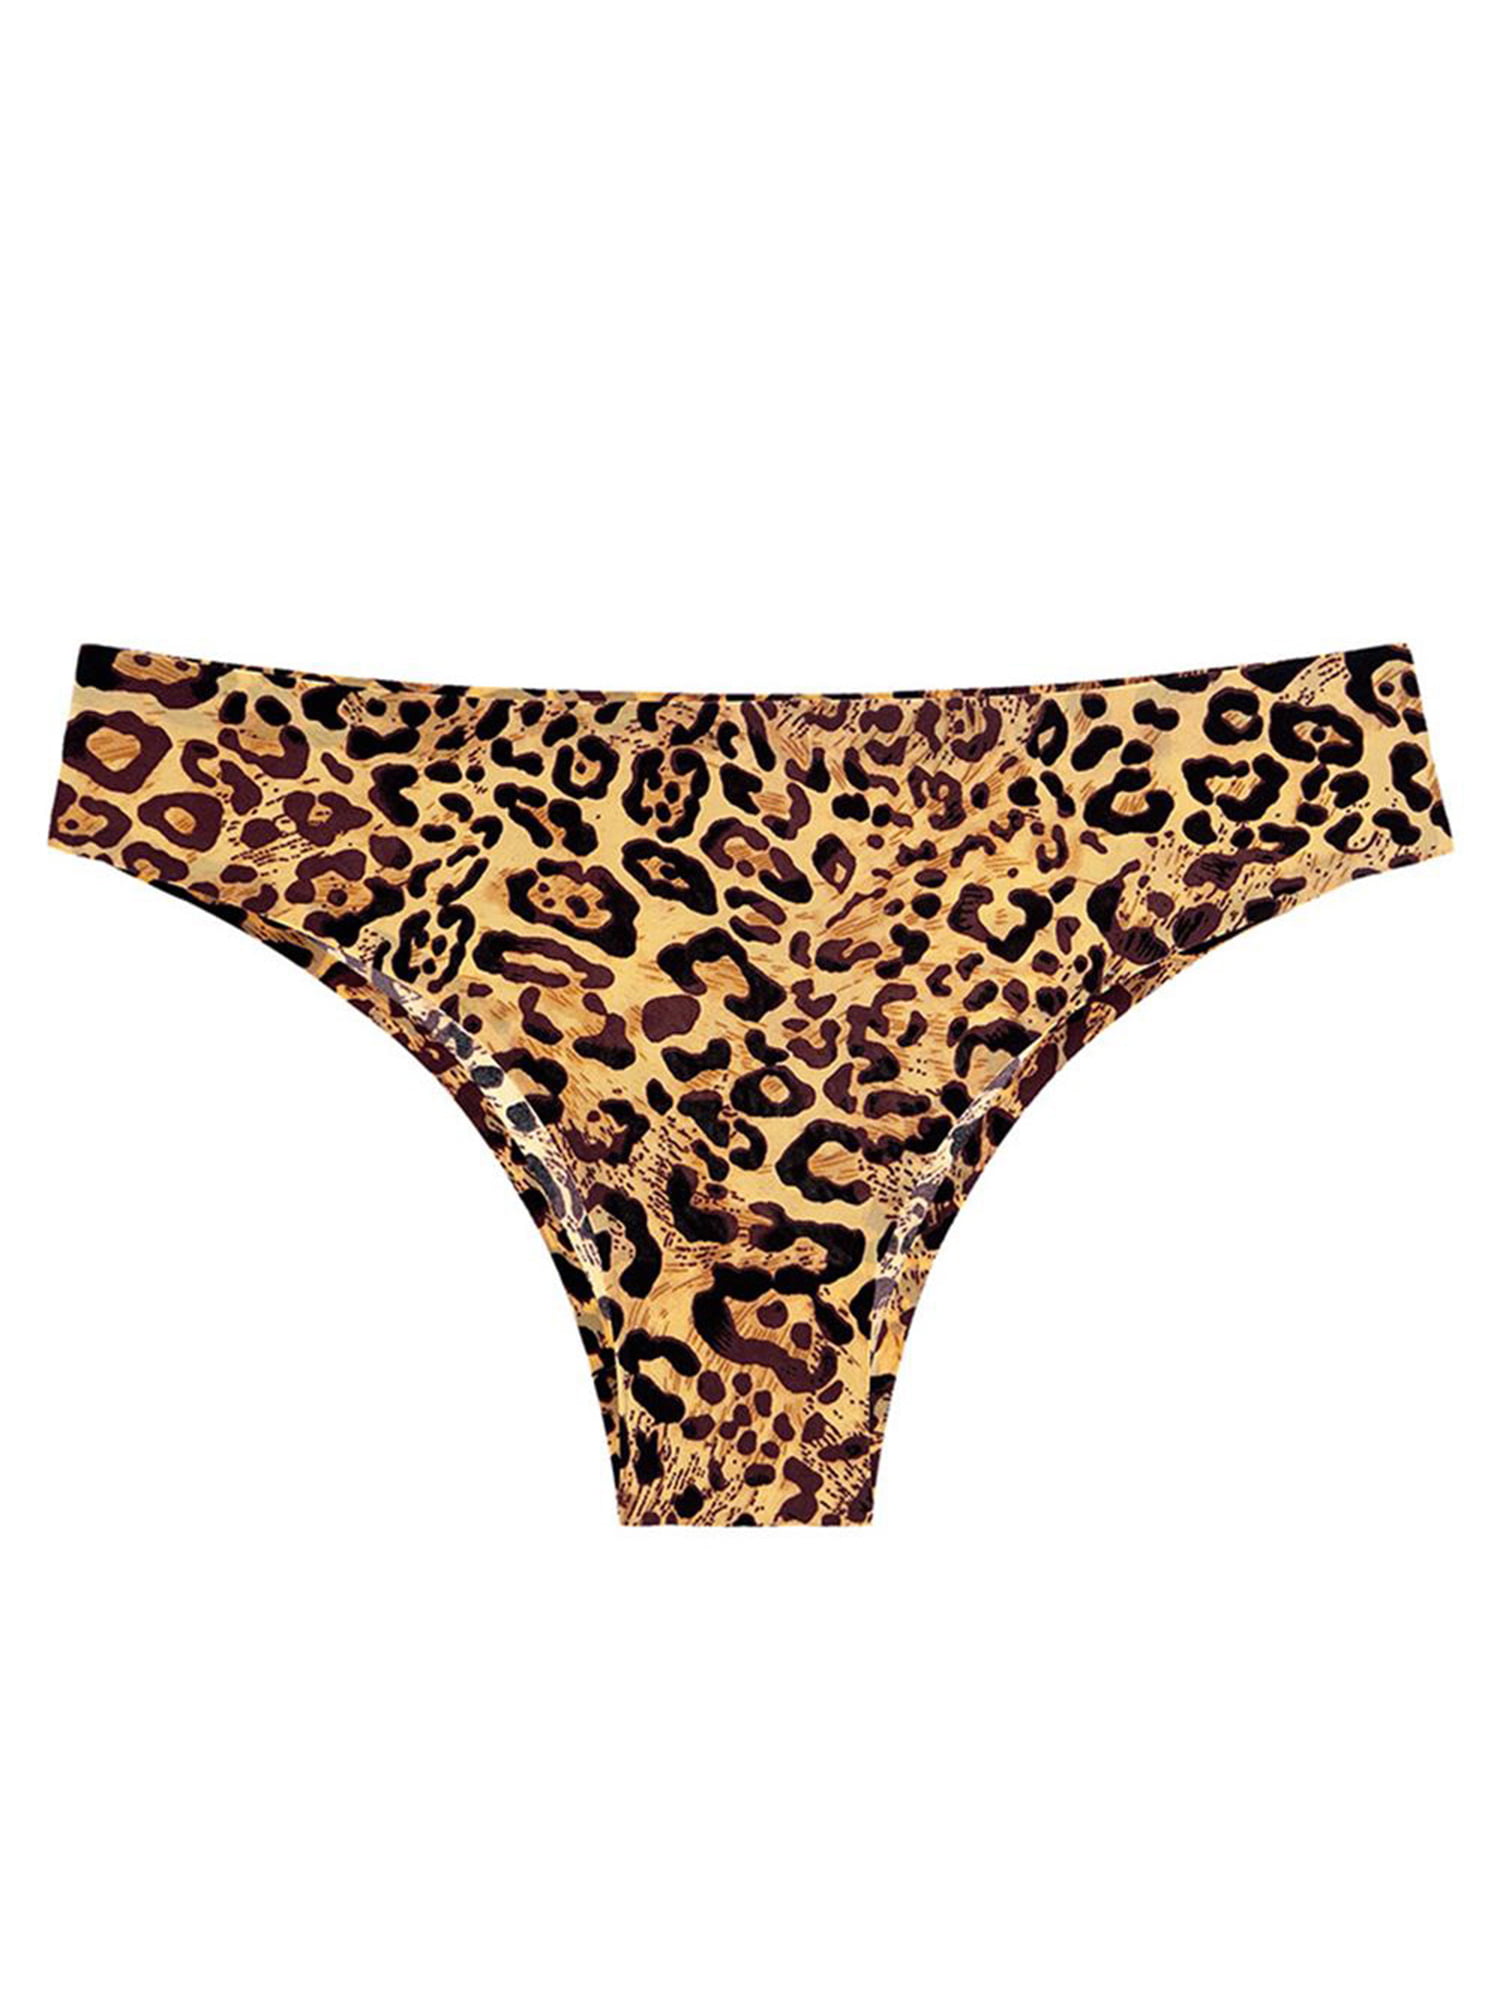 Eleluny Women Briefs Leopard Thong G-String Panties Underwear Knickers ...